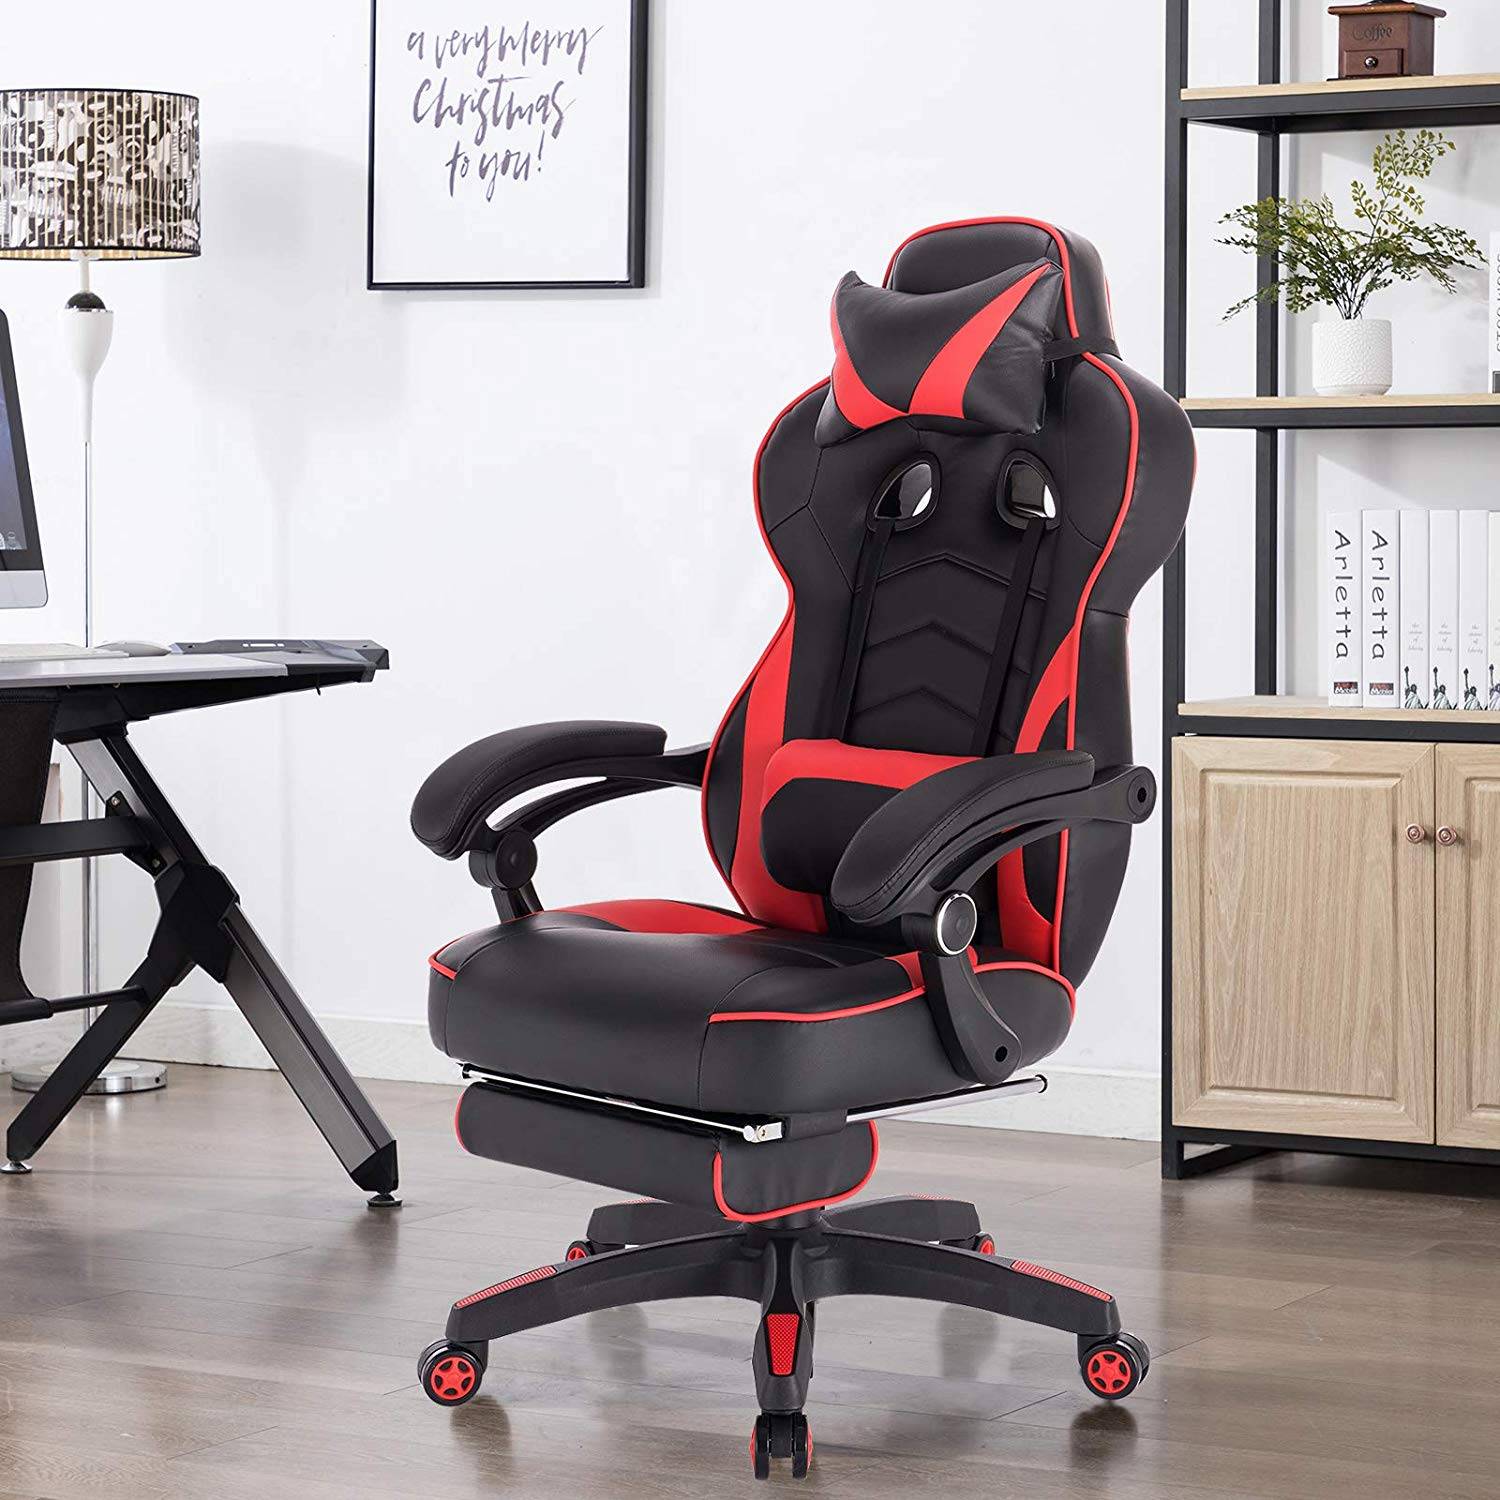 WOLTU BS75rt Gaming Stuhl Racing Stuhl Bürostuhl ergonomischer Schreibtischstuhl mit Kopfkissen und Lendenkissen mit Wippfunktion mit hoher Rückenlehne höhenverstellbar PC Stuhl Kunstleder Rot 